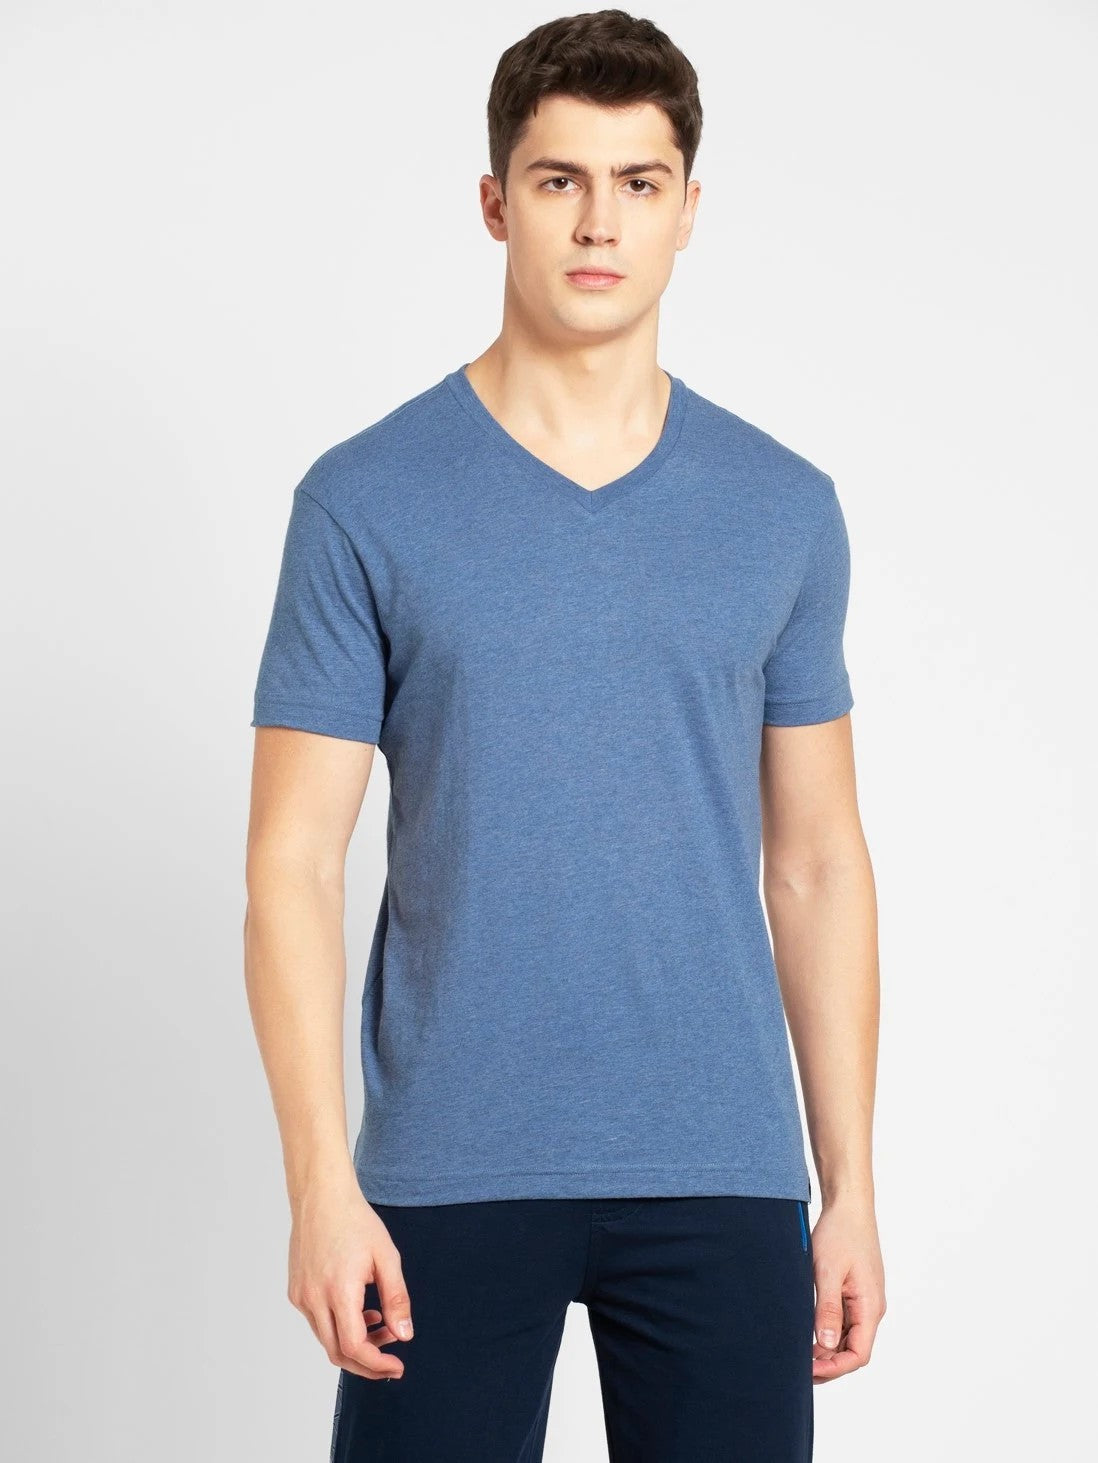 Men's Light Denim Melange V-Neck T-shirt